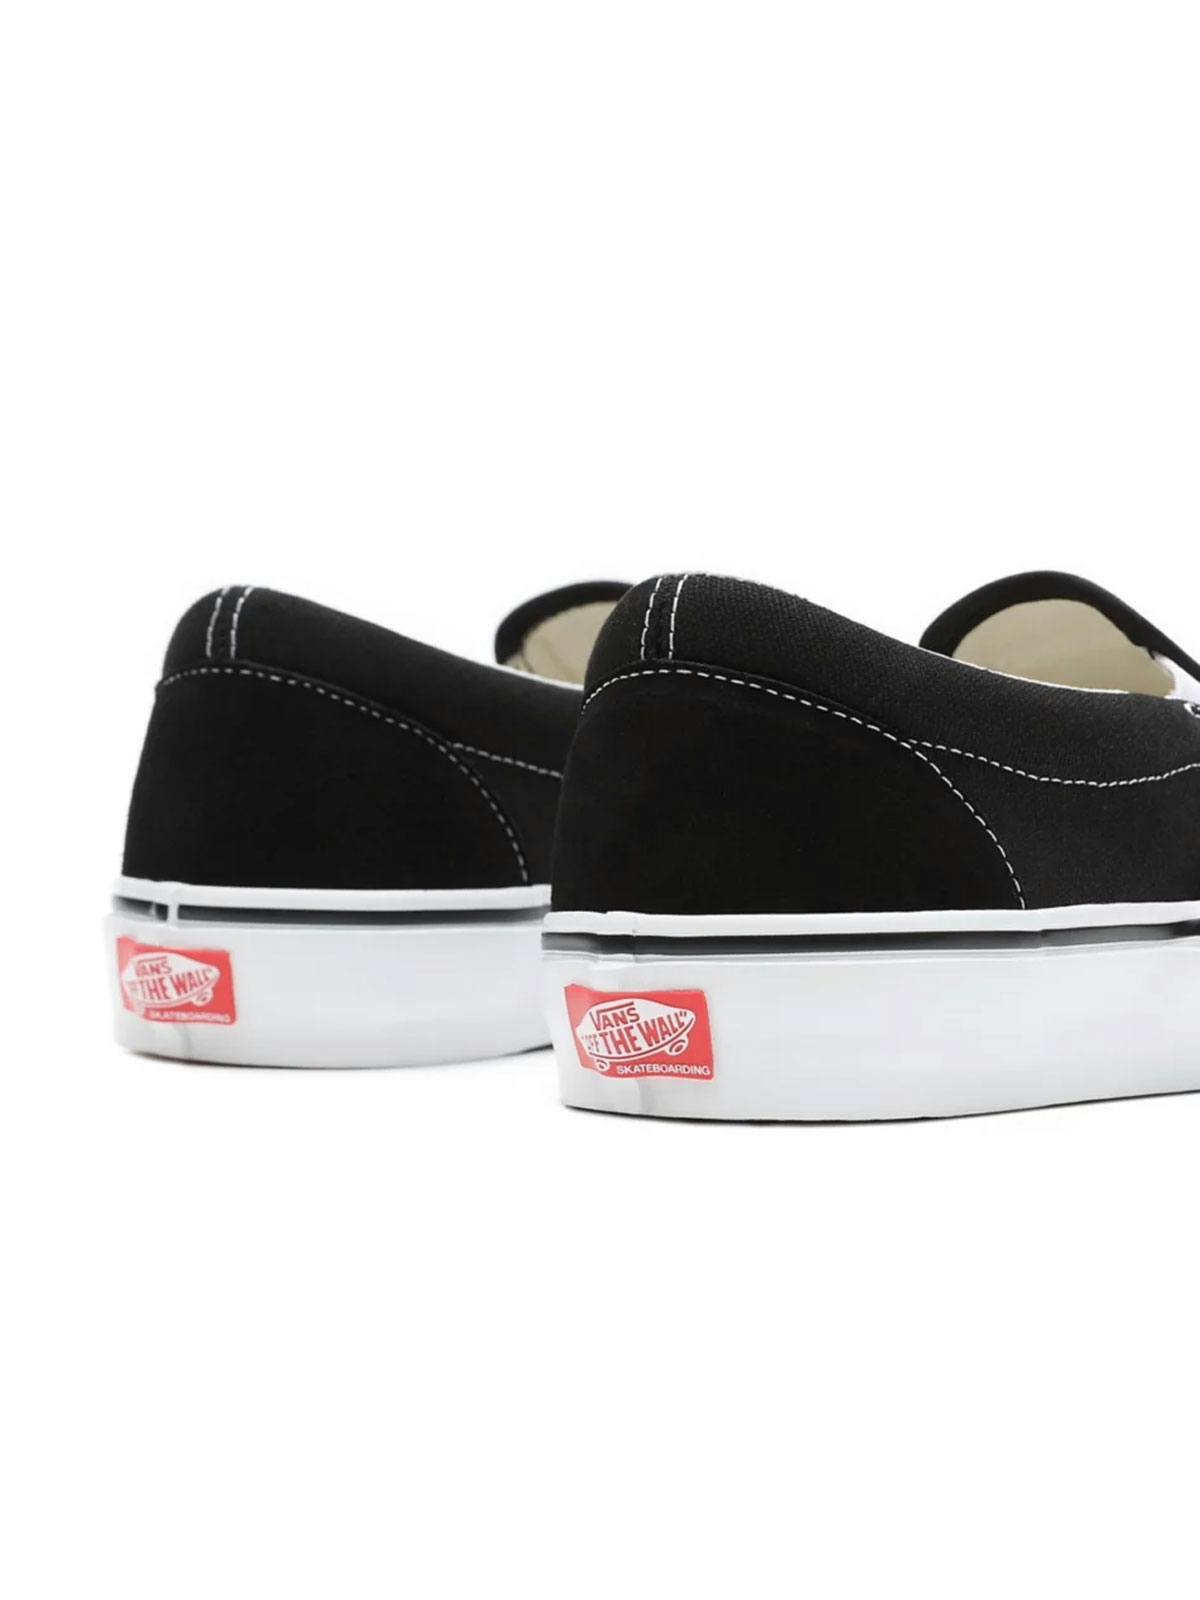 Vans Skate Slip-on Shoes Black/White 4